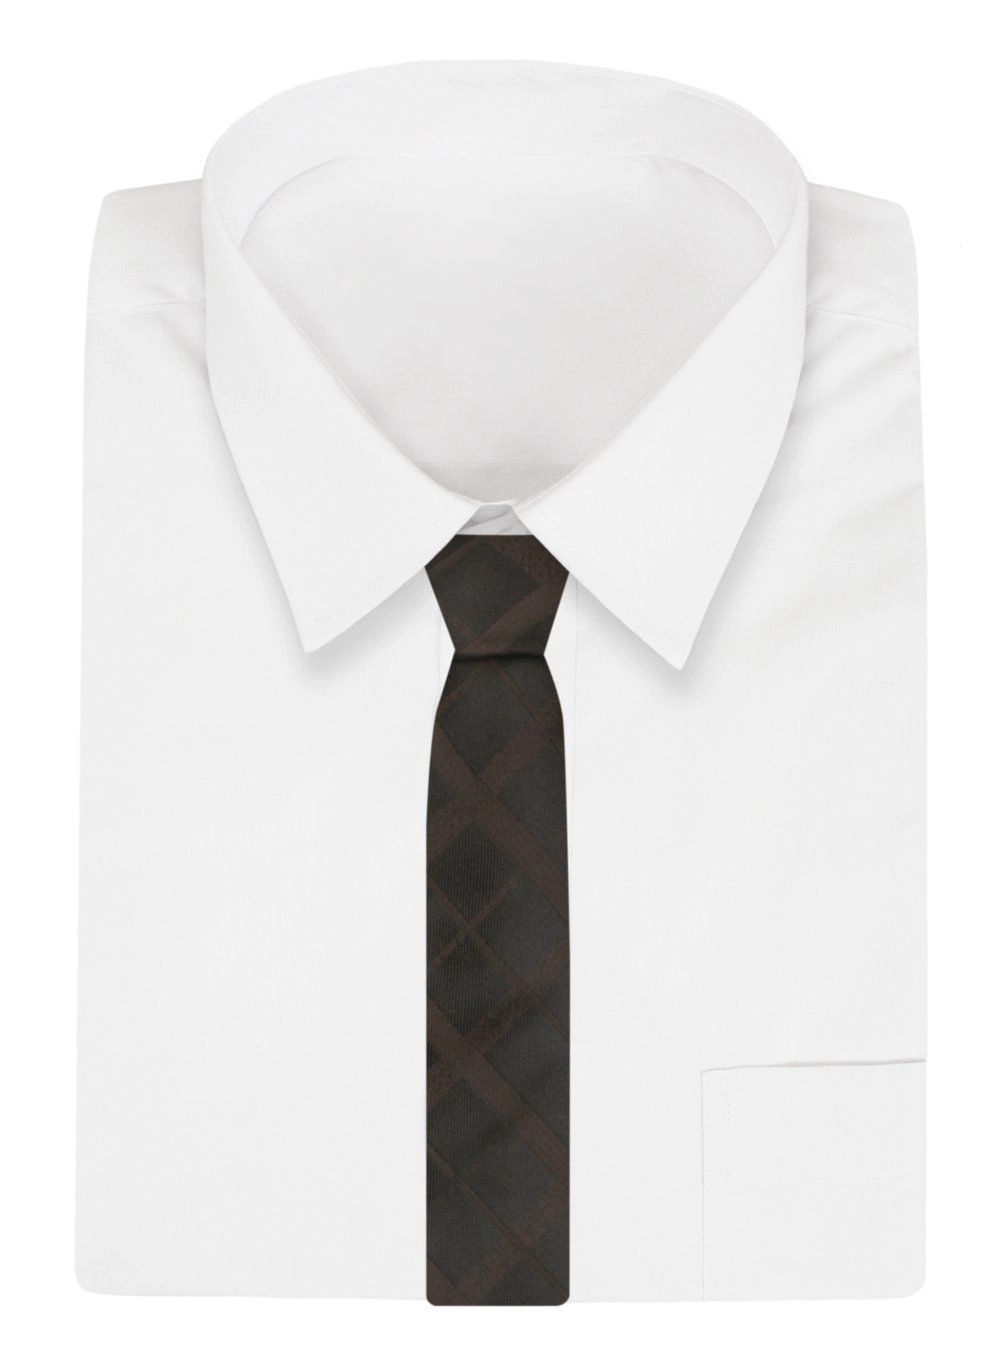 Krawat Męski, Klasyczny - ALTIES - Brązowy, Deseń w Kratę